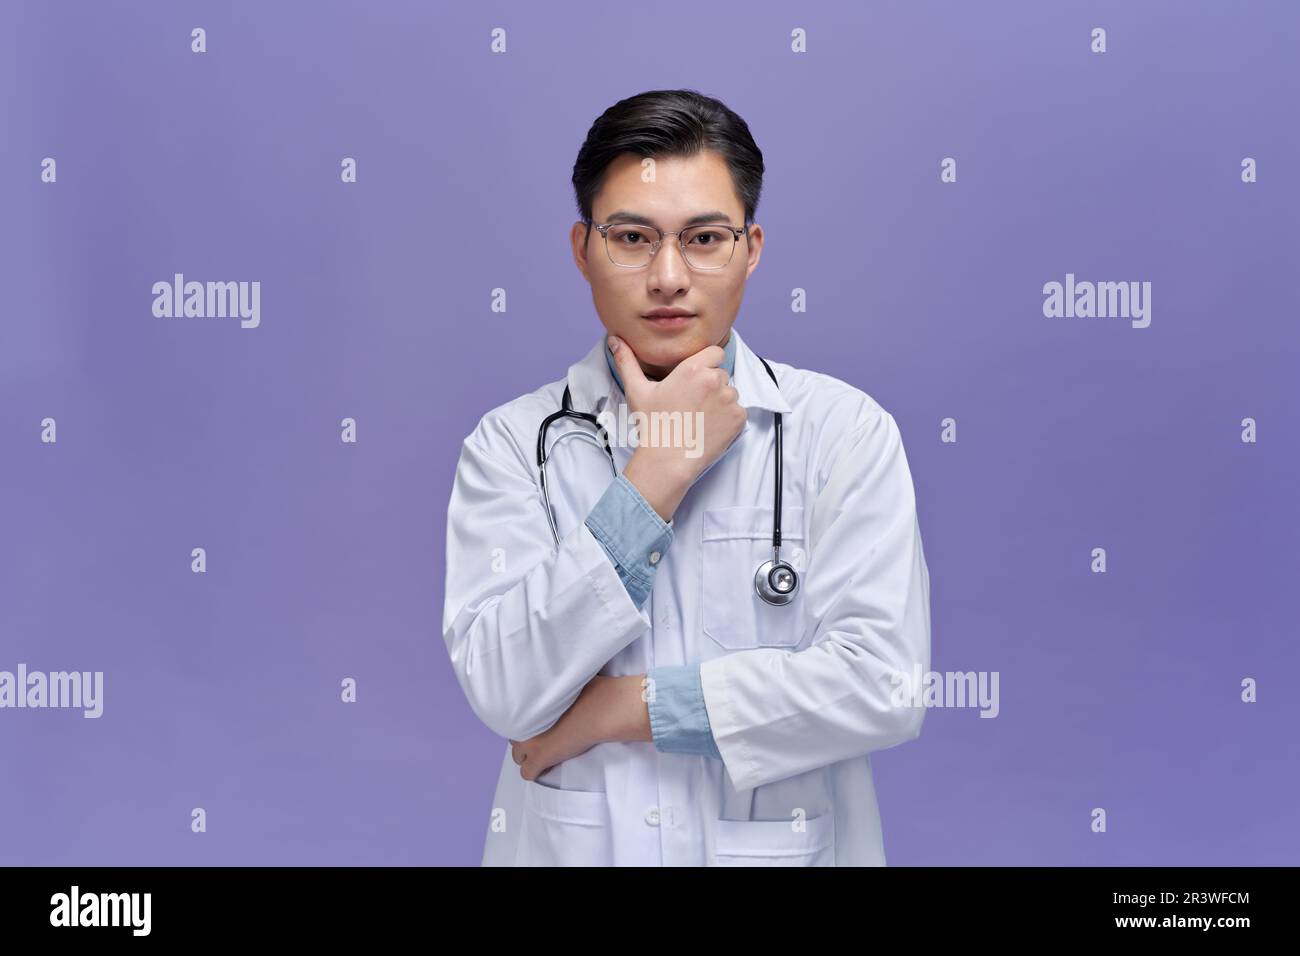 Medico asiatico maschio in scrub alla ricerca di idea pensare, alla ricerca di soluzione Foto Stock